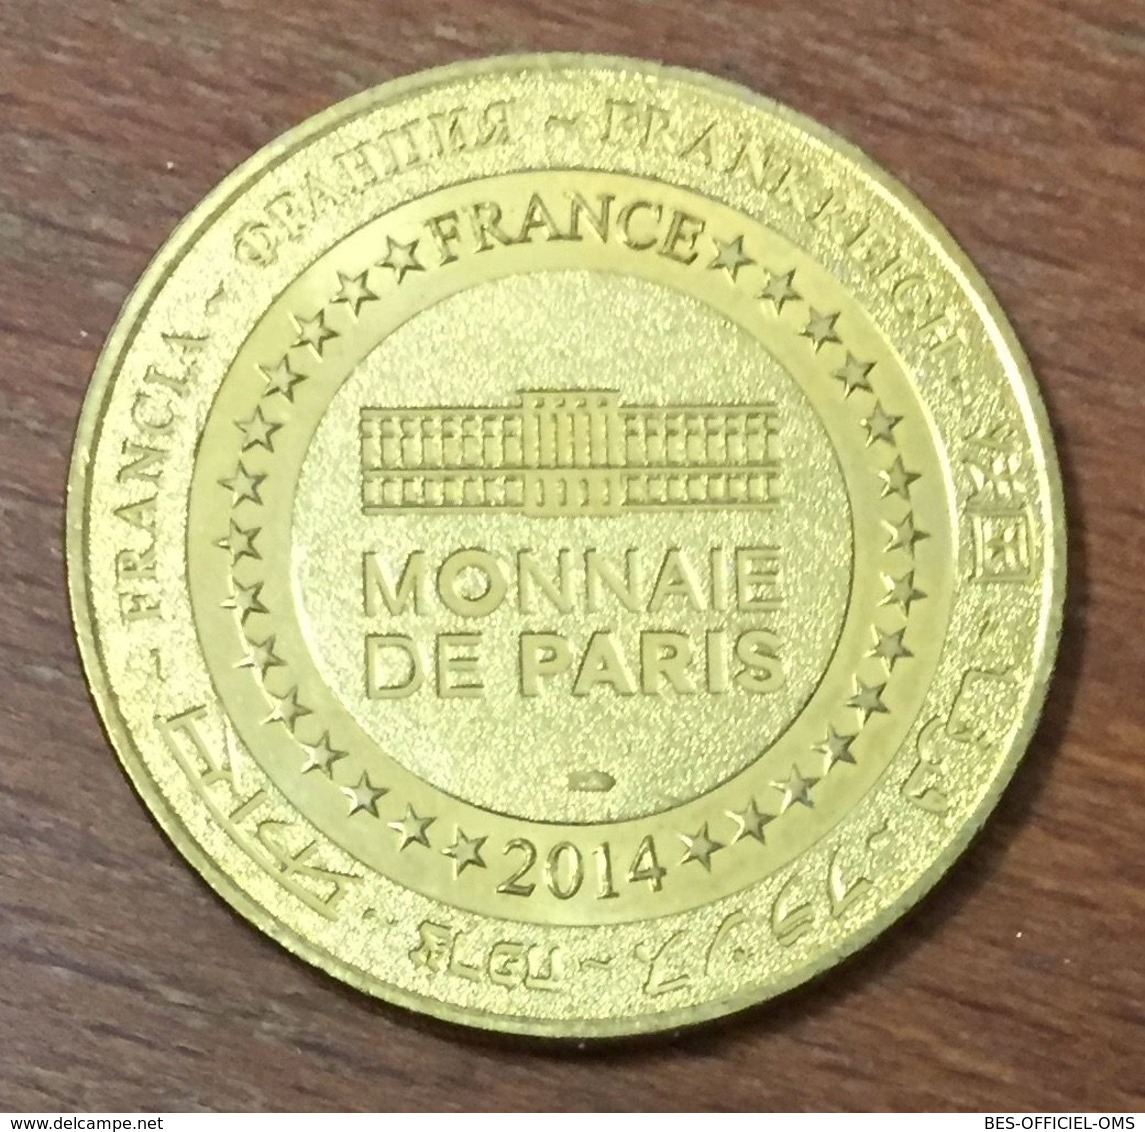 62 HELFAUT LA COUPOLE SAINT OMER MEDAILLE SOUVENIR MONNAIE DE PARIS 2014 JETON TOURISTIQUE MEDALS COINS TOKENS - 2014